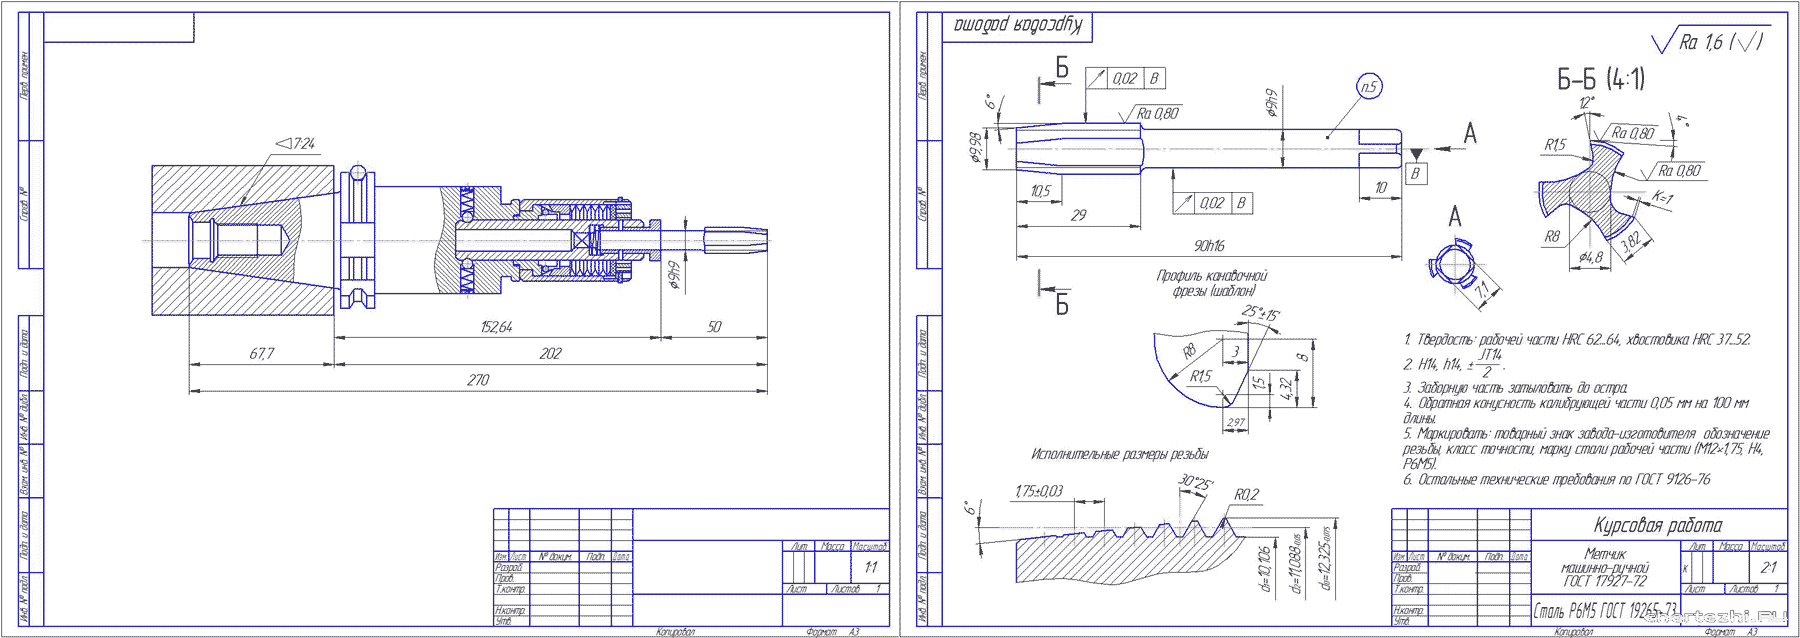 Курсовая работа - Проектирование инструментального блока для станка с ЧПУ, состоящий из регулируемого резьбонарезного патрона и машинного метчика